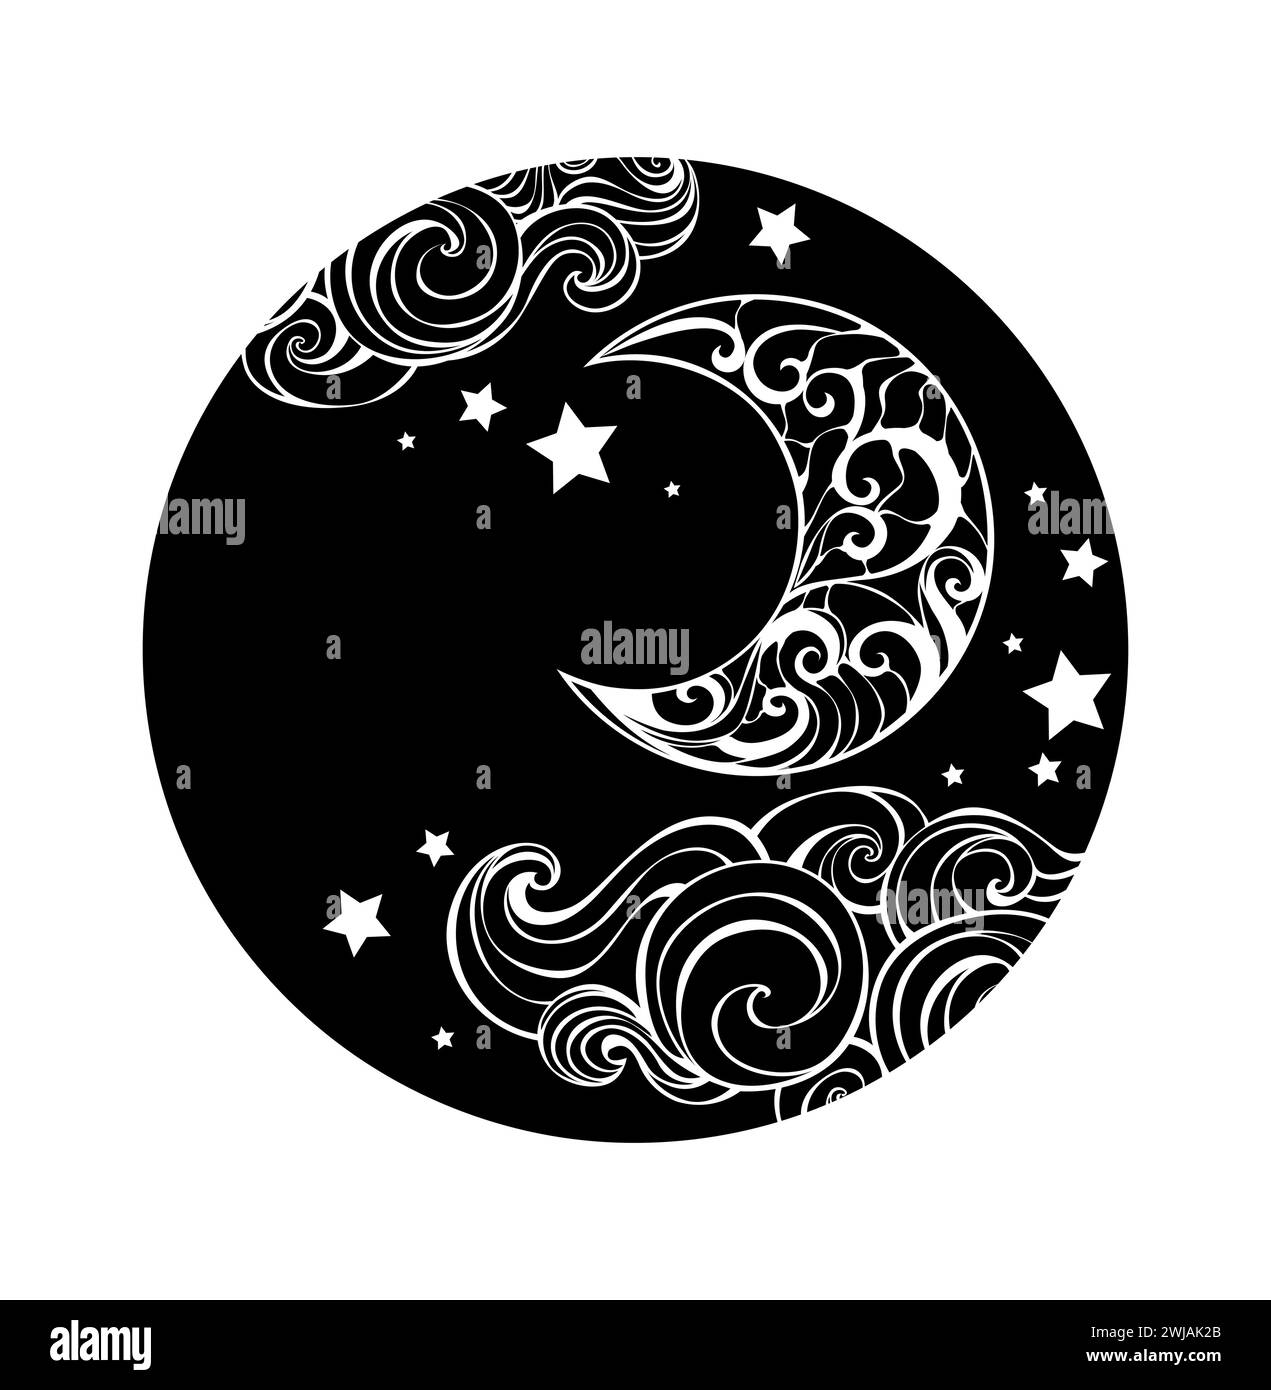 Rund, Silhouette, Monogramm mit künstlerisch gezeichnetem Halbmond, Wolken und Sternen auf weißem Hintergrund. Gemusterter Halbmond. Stock Vektor